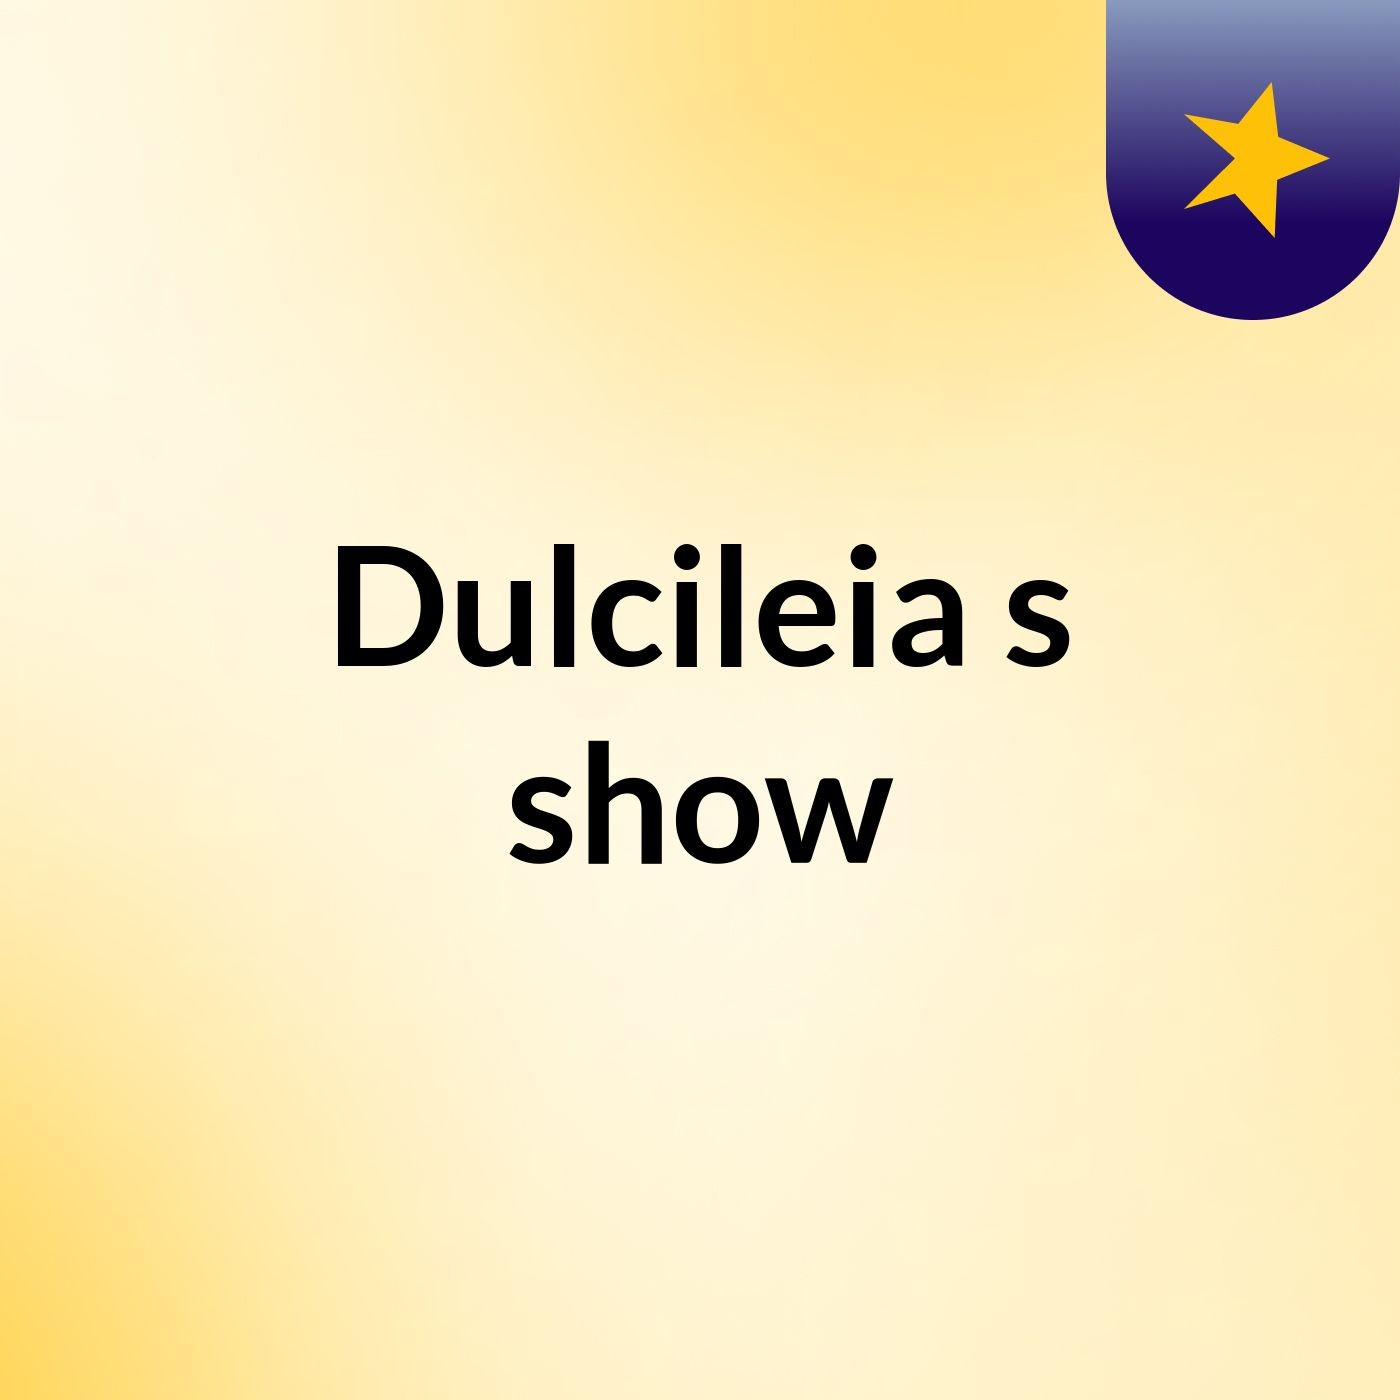 Dulcileia's show